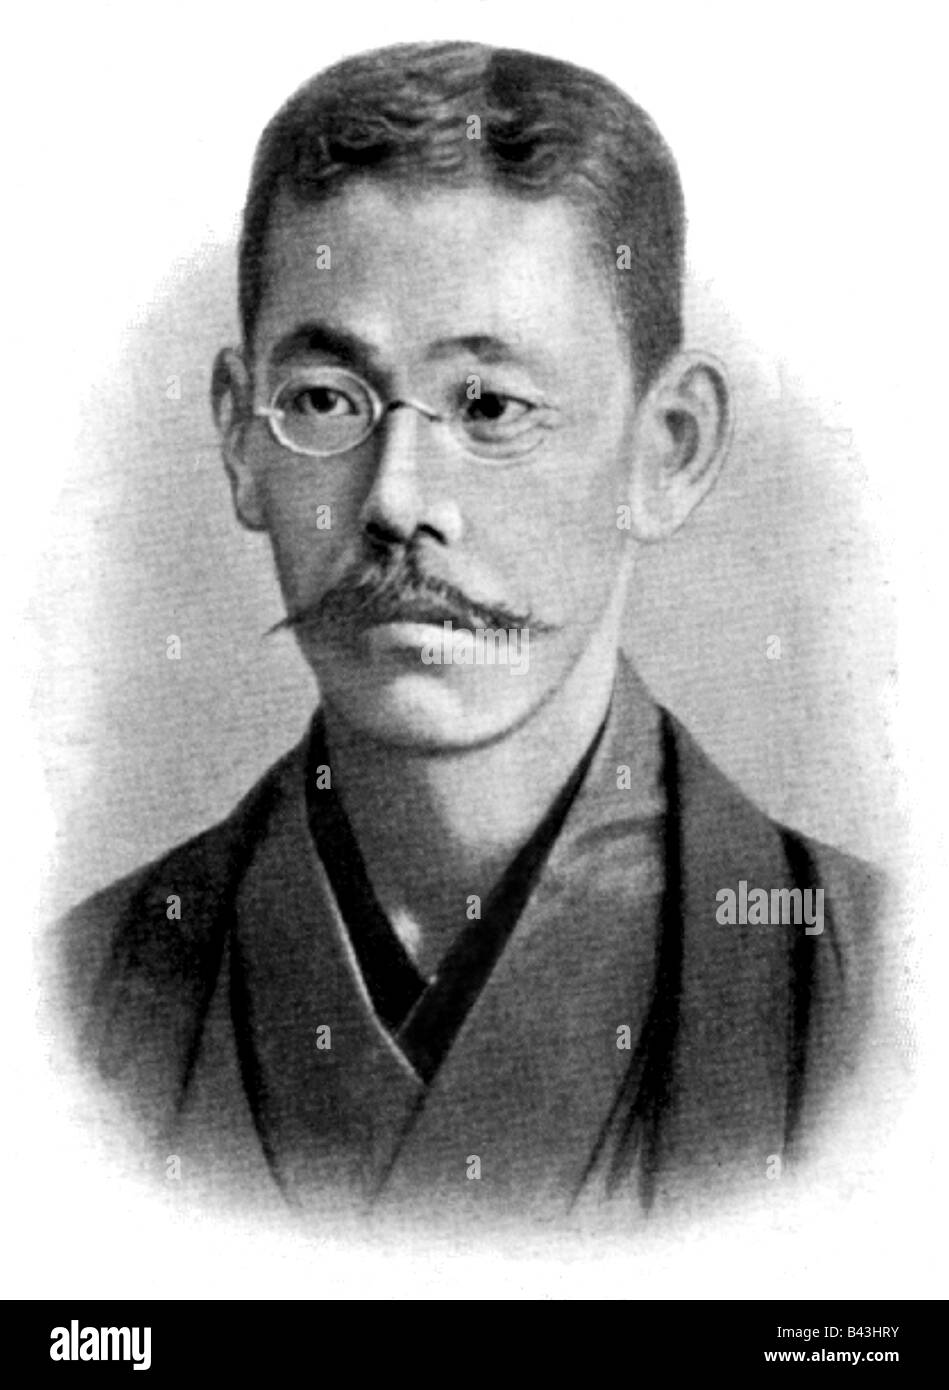 Tsubouchi, Shoyo, 22.5.1859 - 28.2.1935, Japanese author / writer, portrait, engraving after photography, 1910, Stock Photo